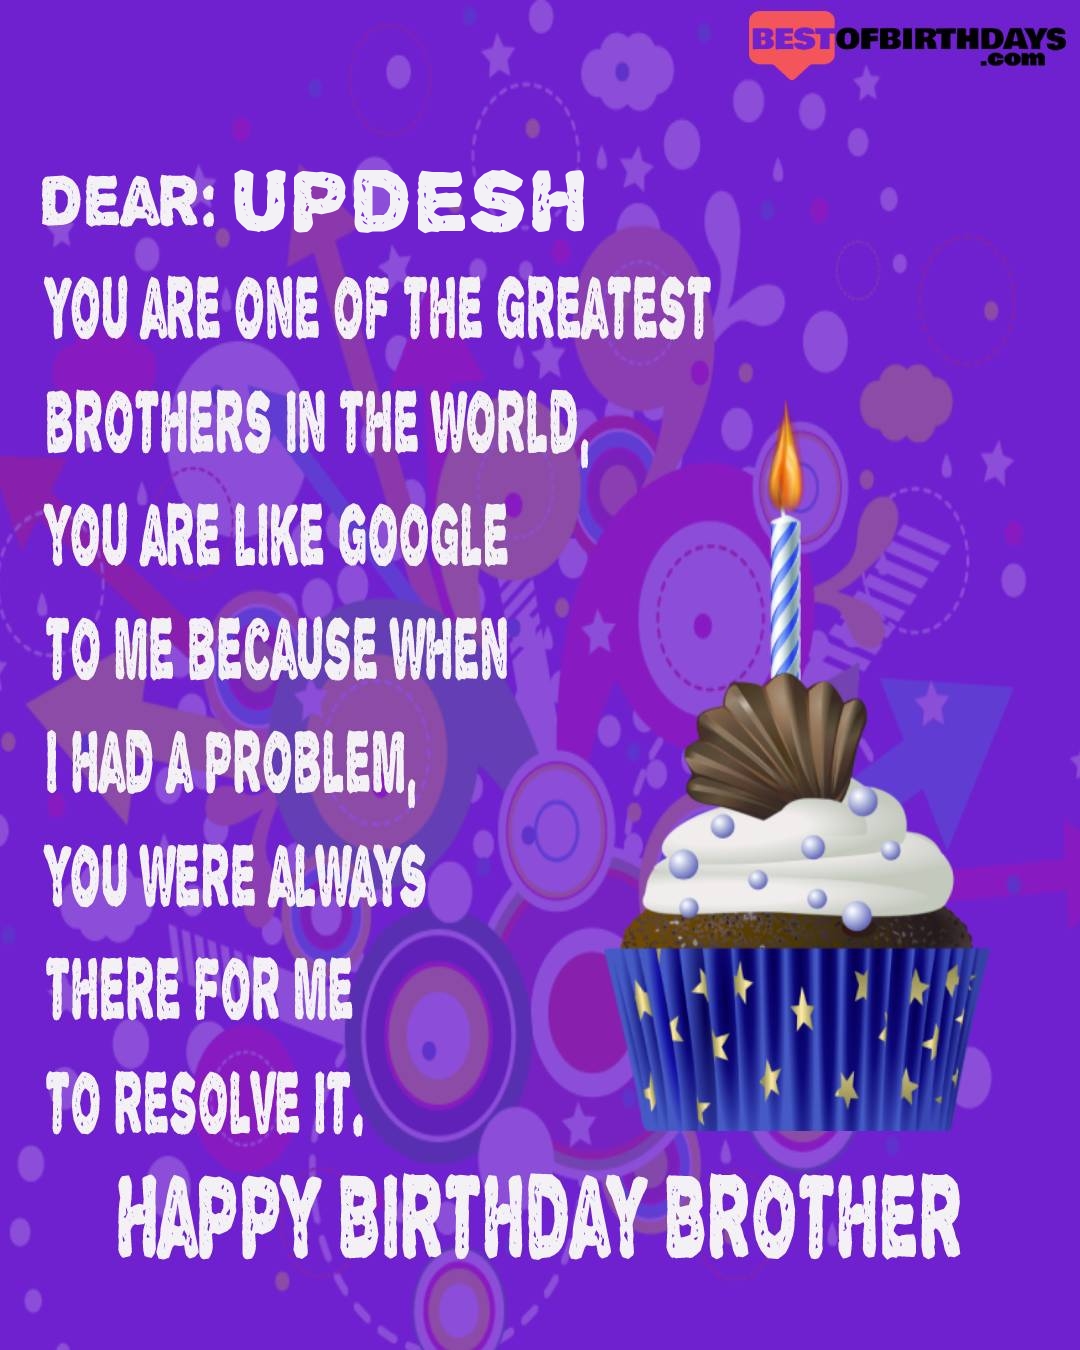 Happy birthday updesh bhai brother bro